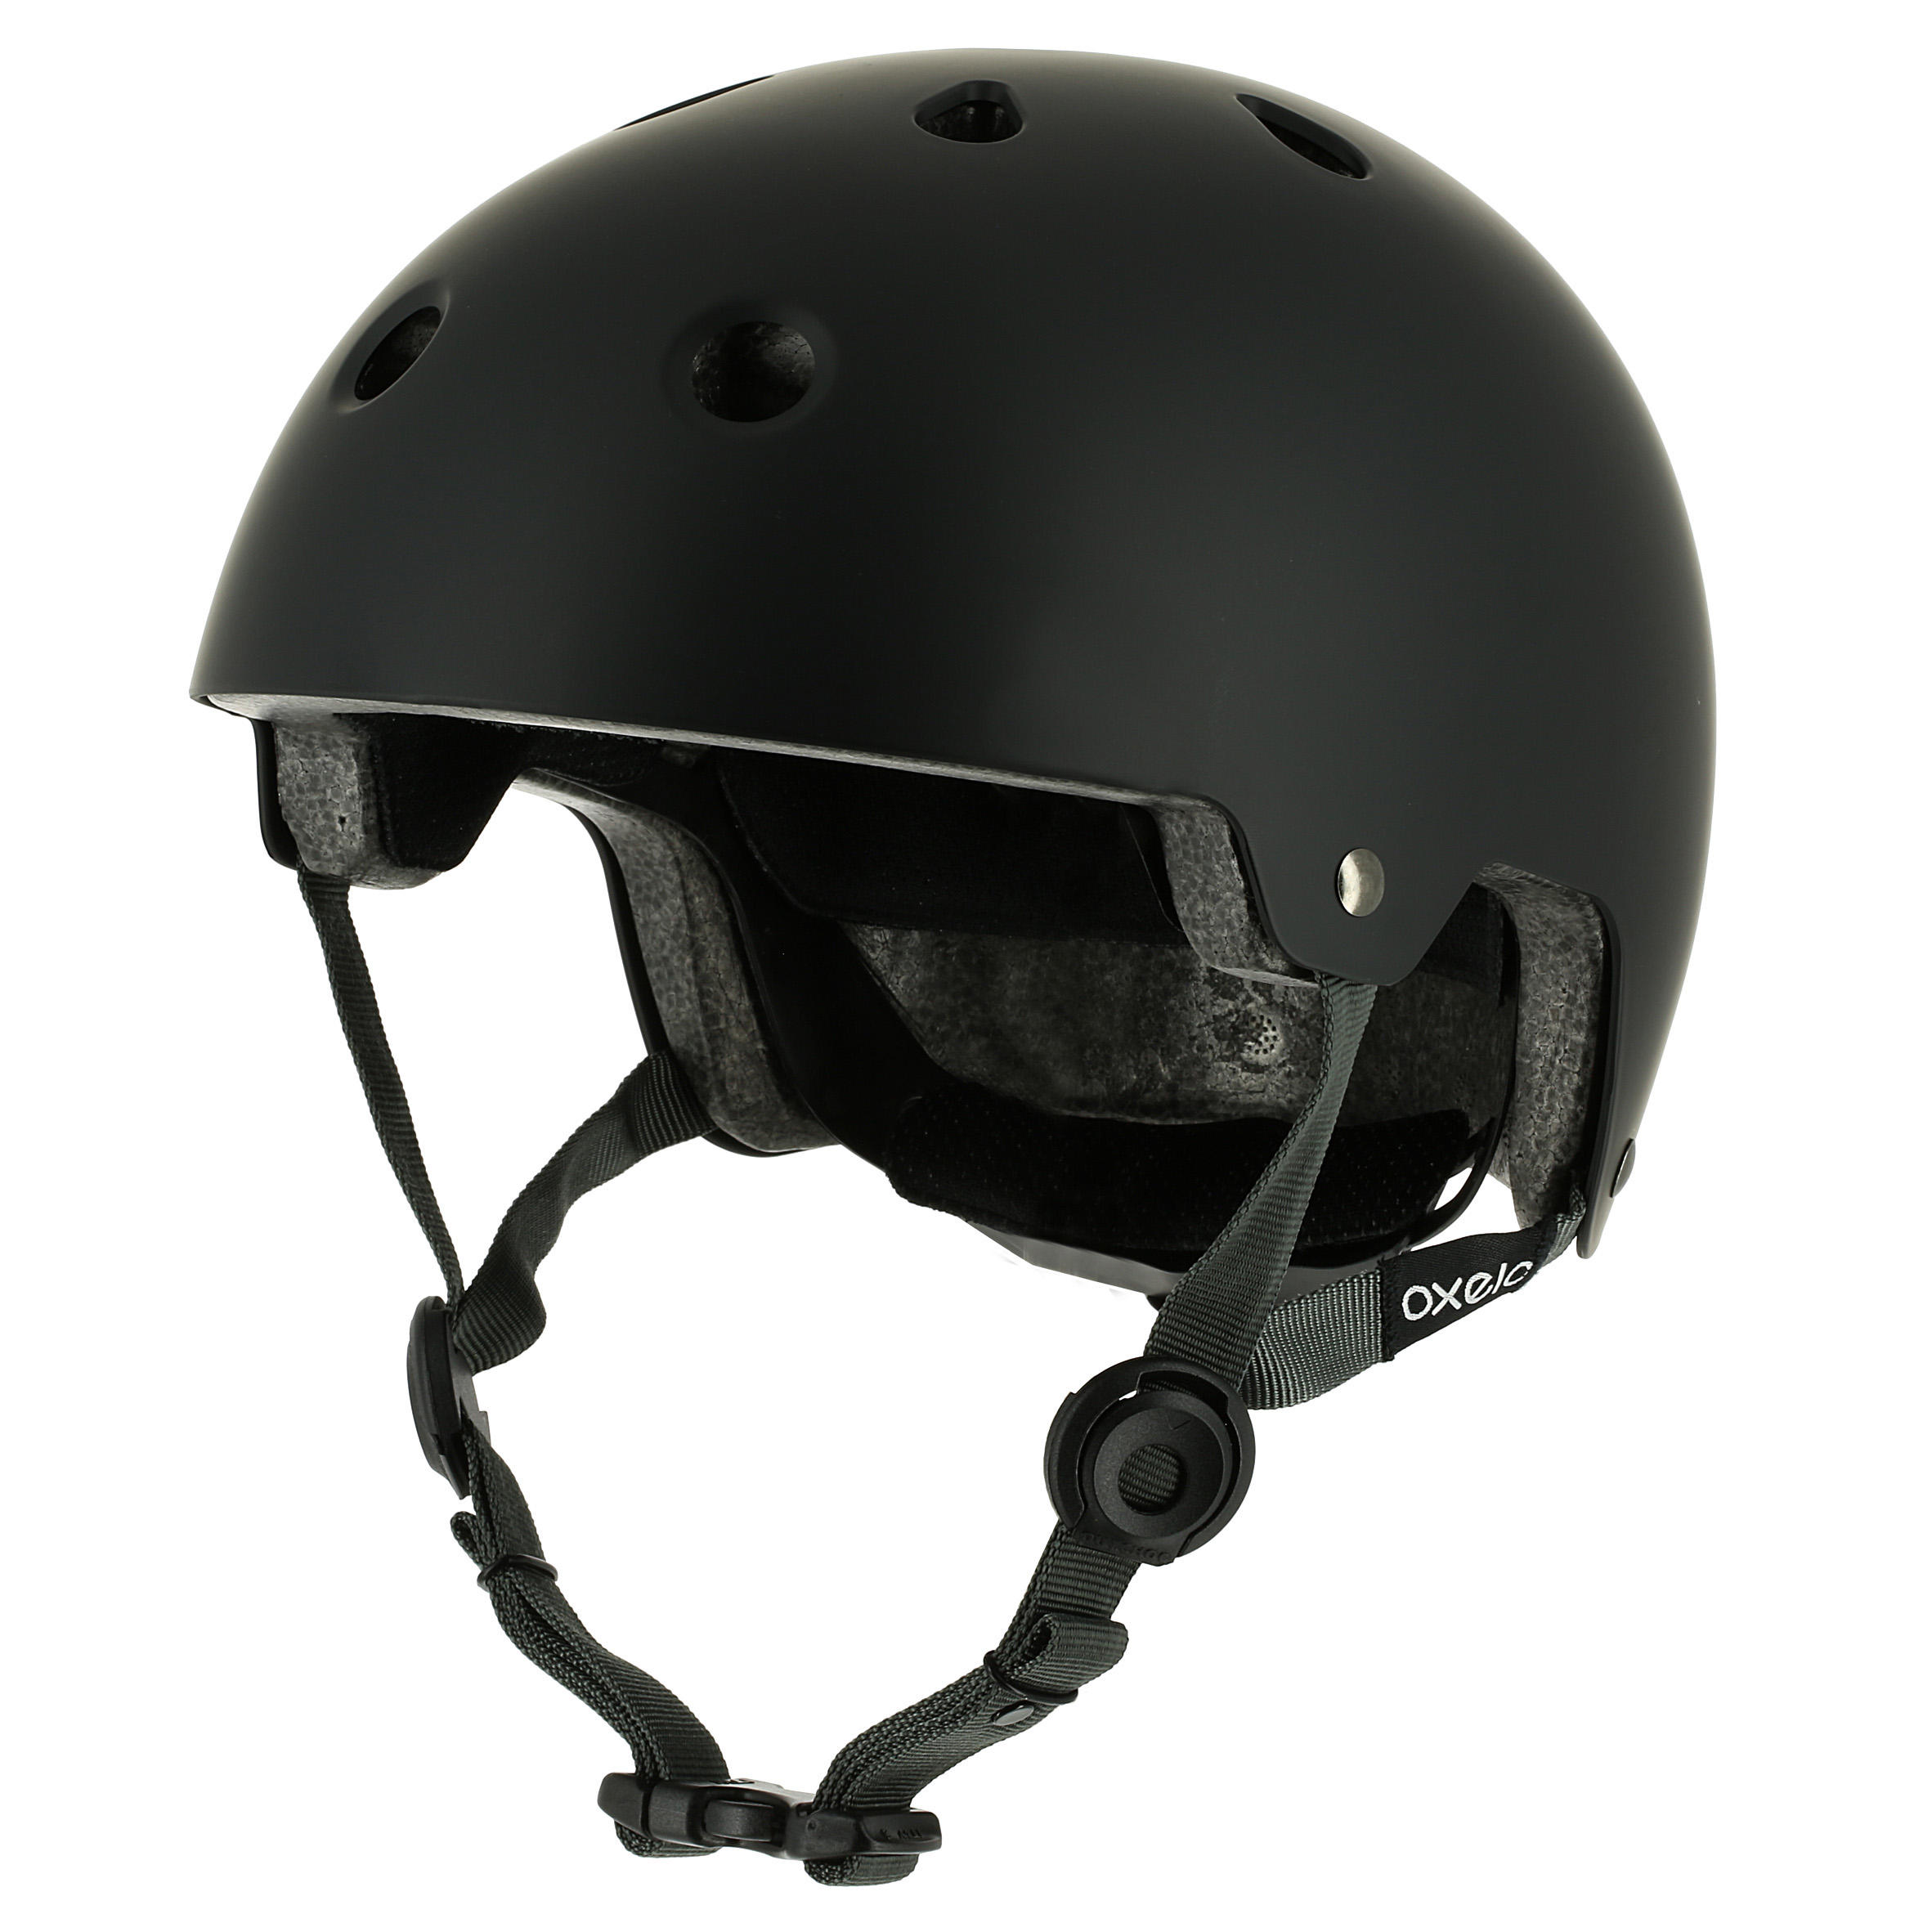 decathlon skate helmet